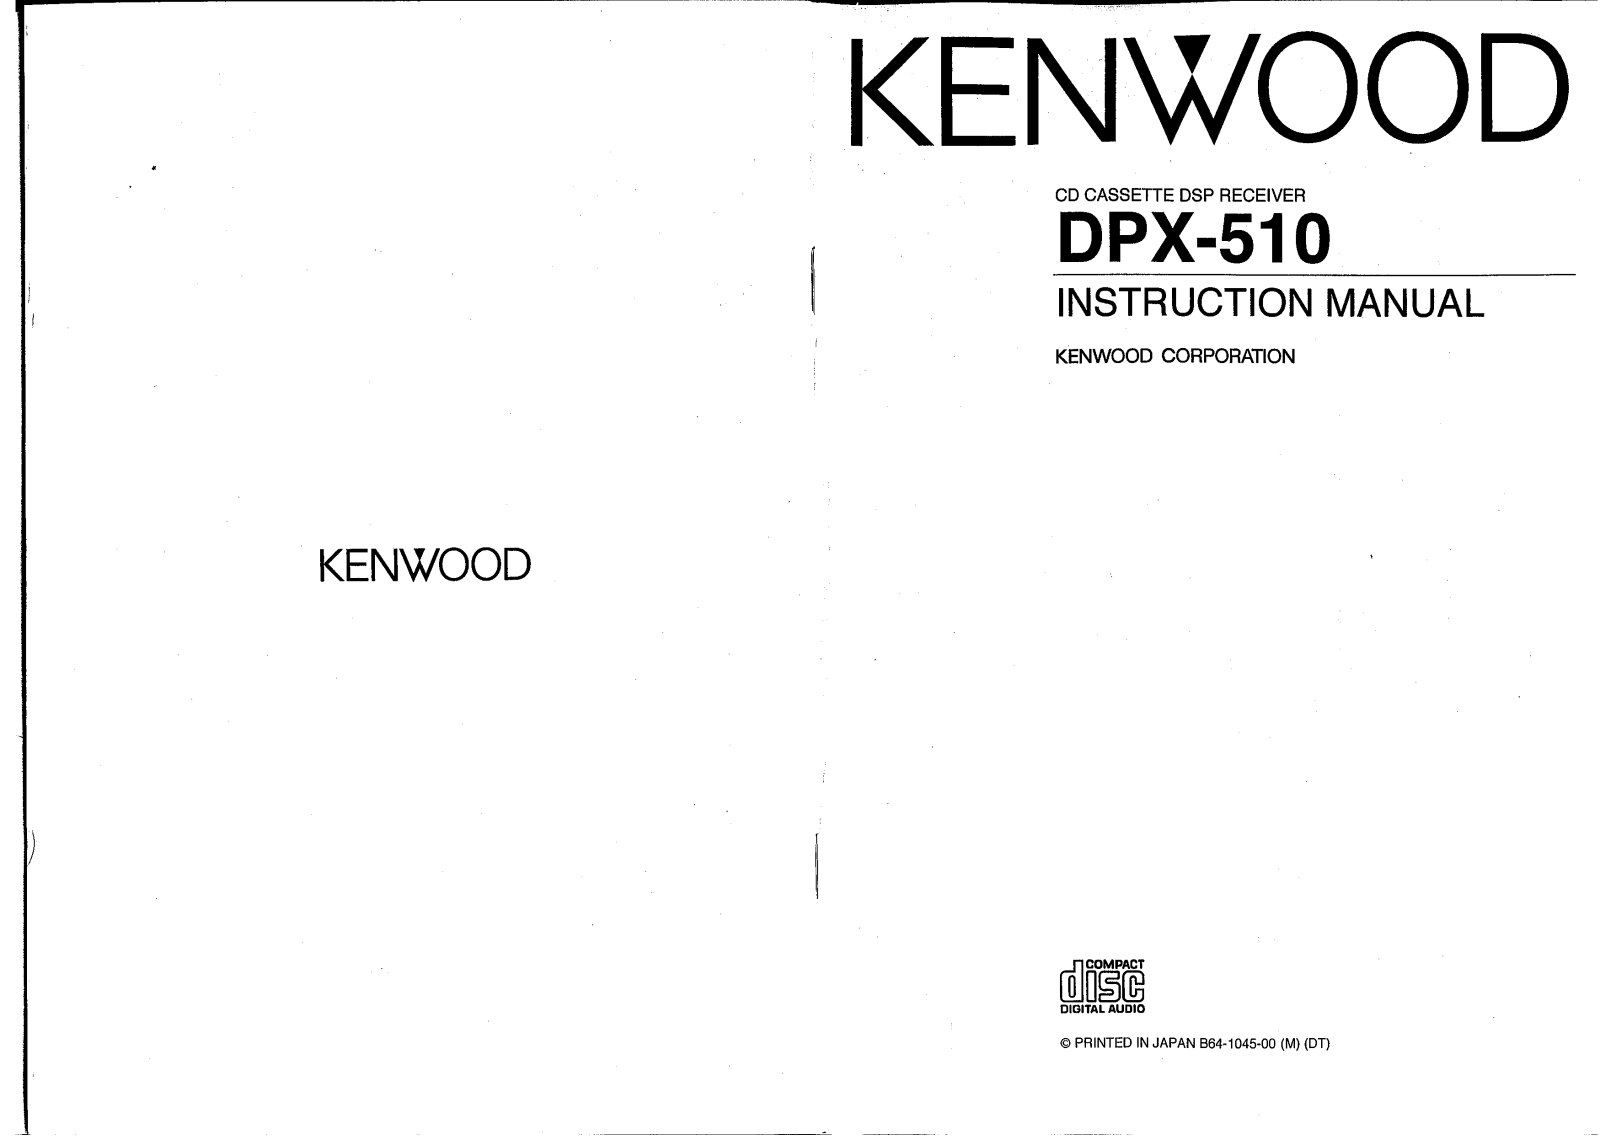 Kenwood DPX-510 Manual